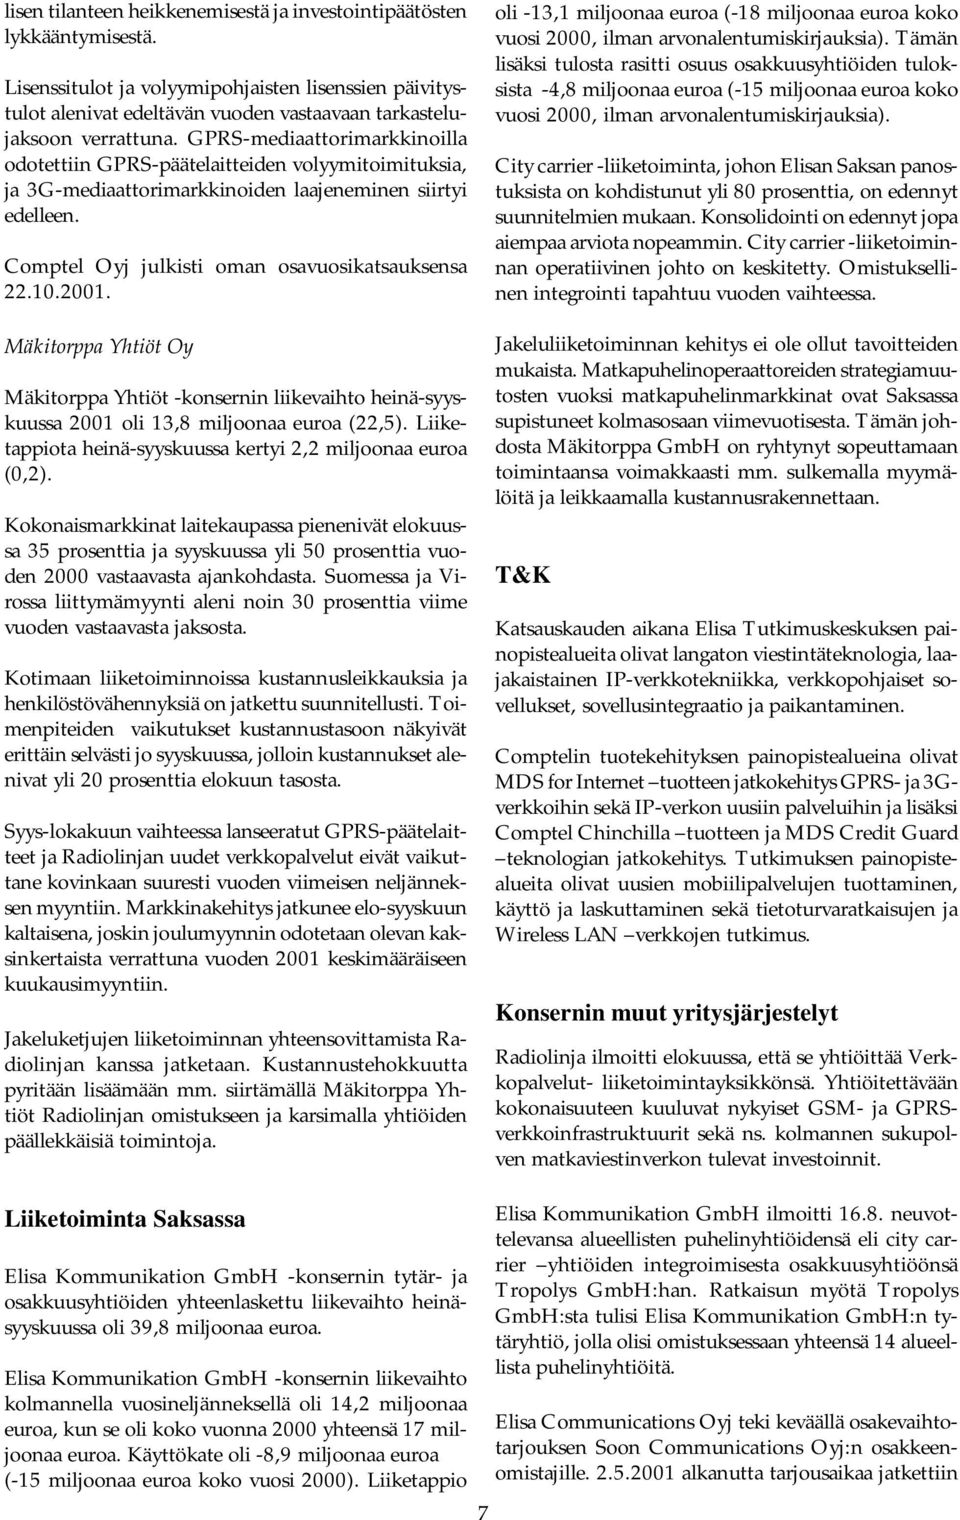 Mäkitorppa Yhtiöt Oy Mäkitorppa Yhtiöt -konsernin liikevaihto heinä-syyskuussa 2001 oli 13,8 miljoonaa euroa (22,5). Liiketappiota heinä-syyskuussa kertyi 2,2 miljoonaa euroa (0,2).